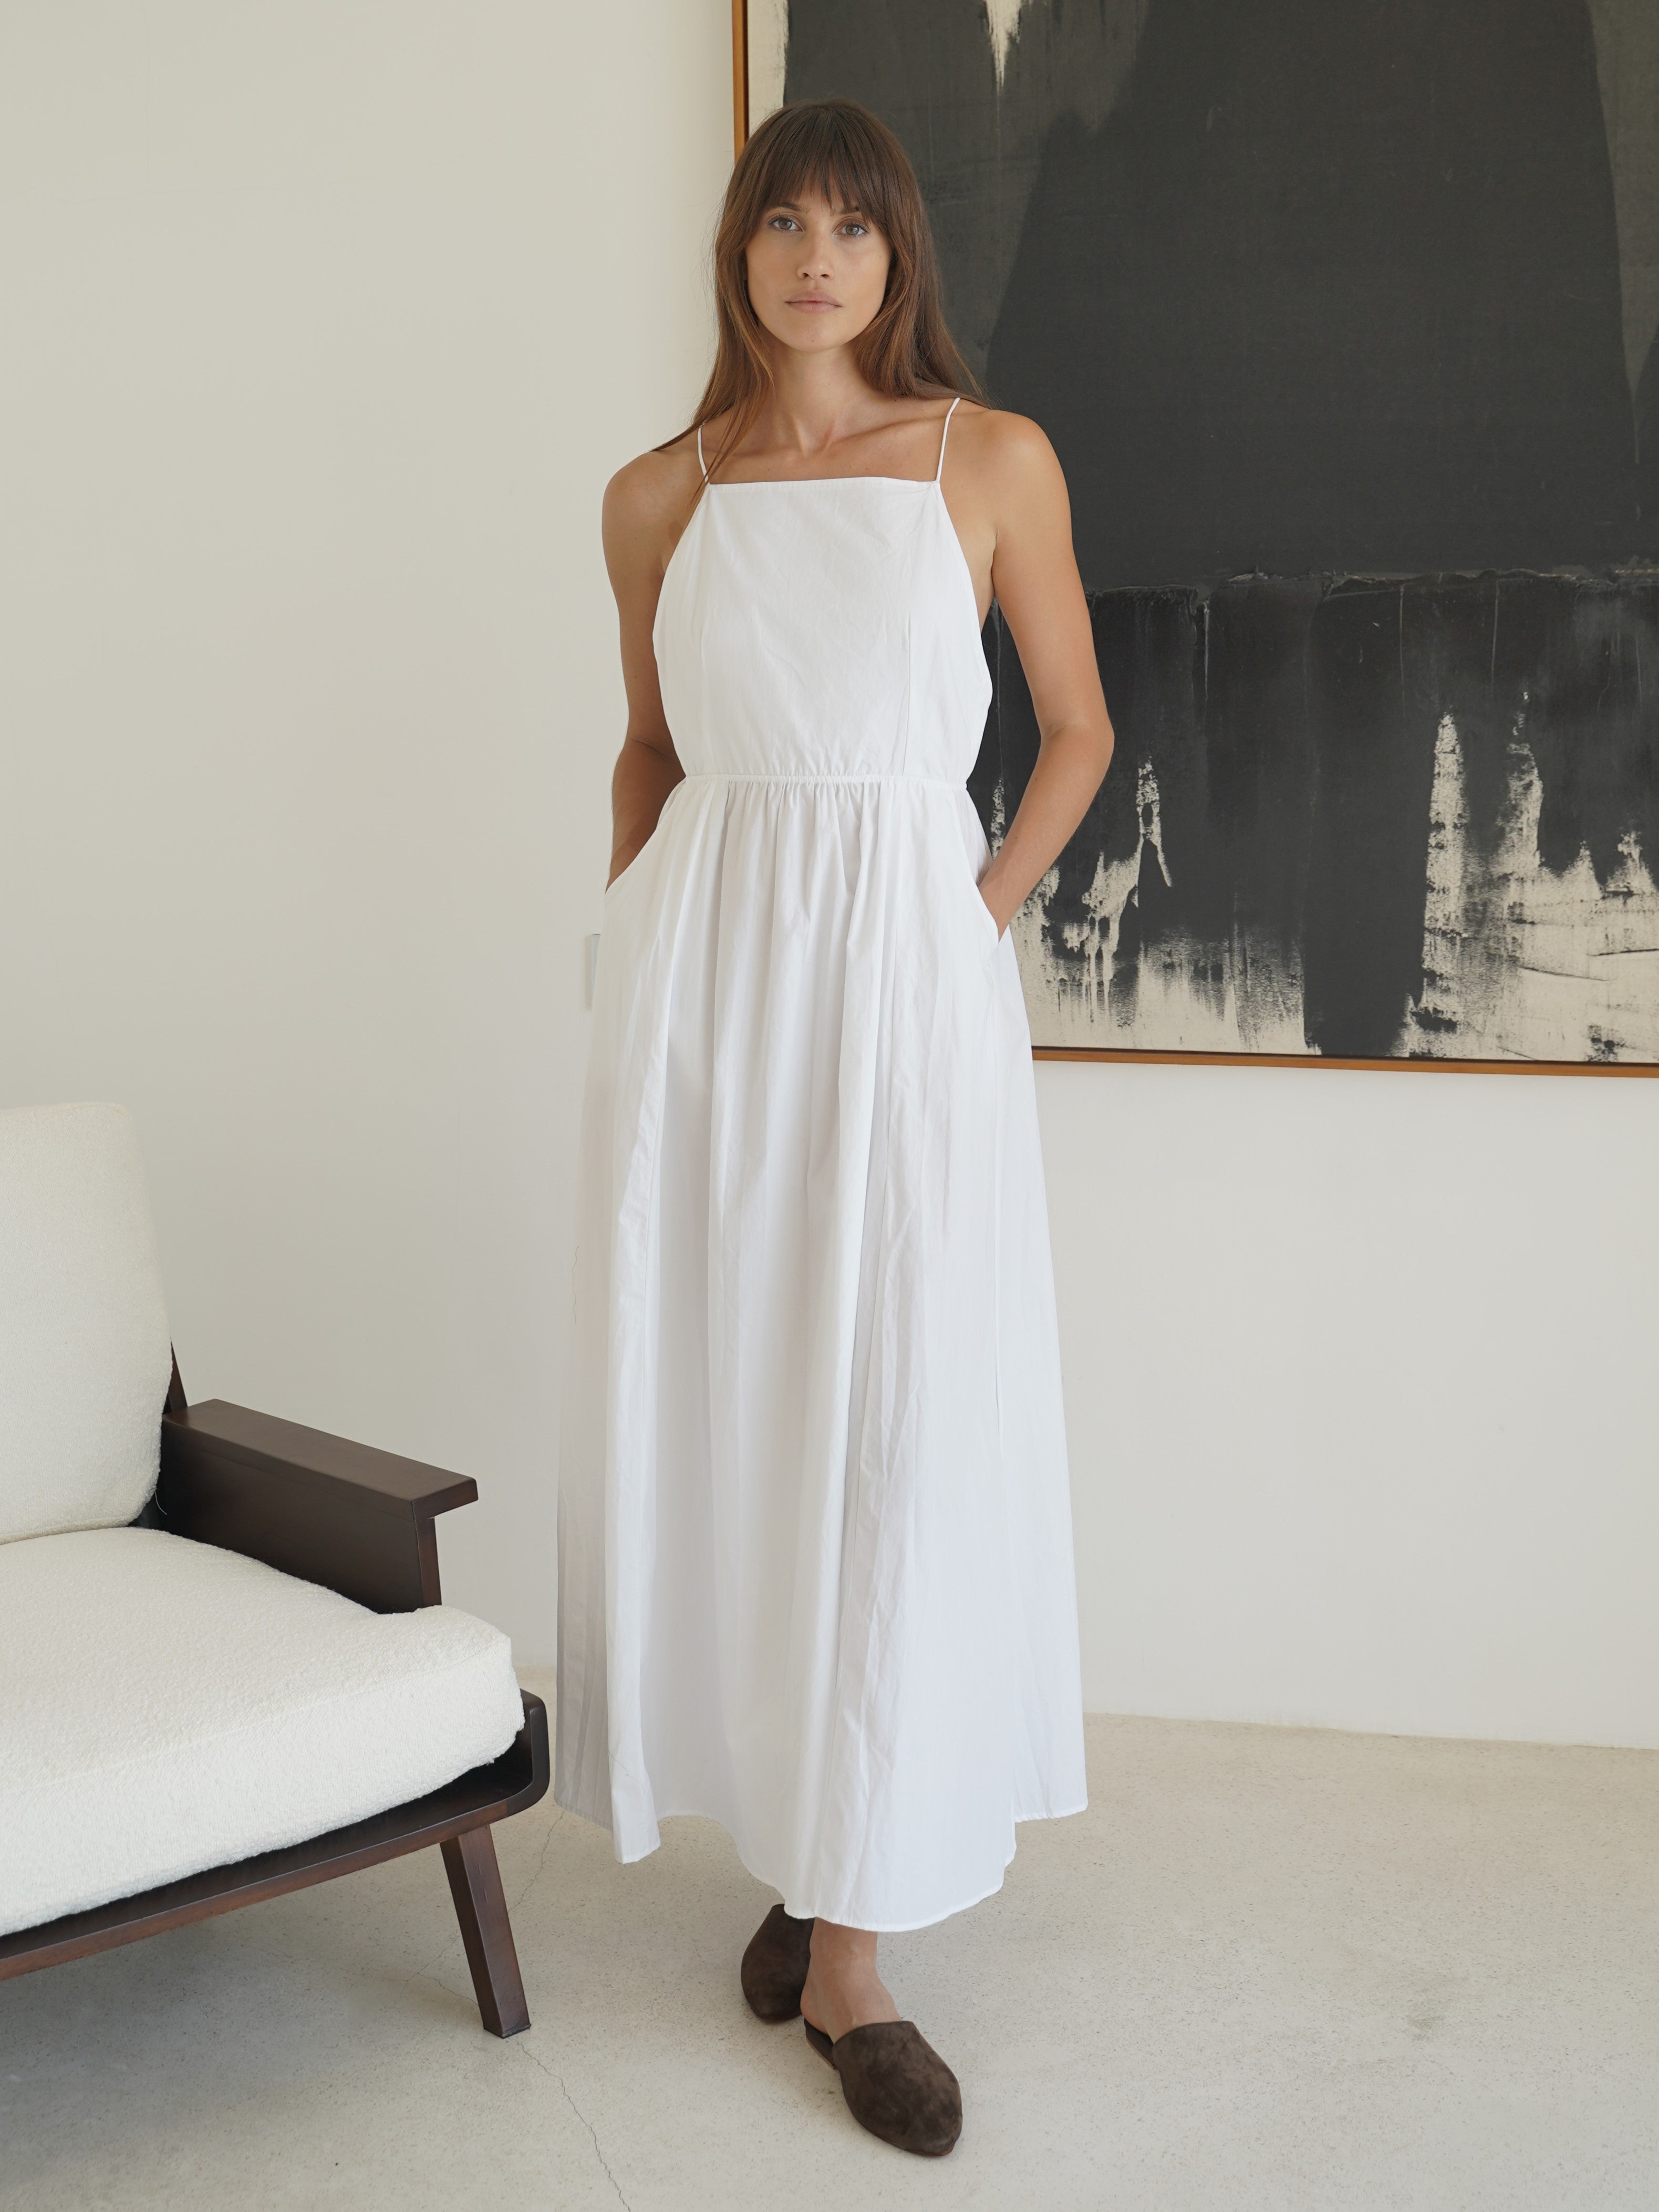 Calliope Backless Dress in White - l u • c i e e